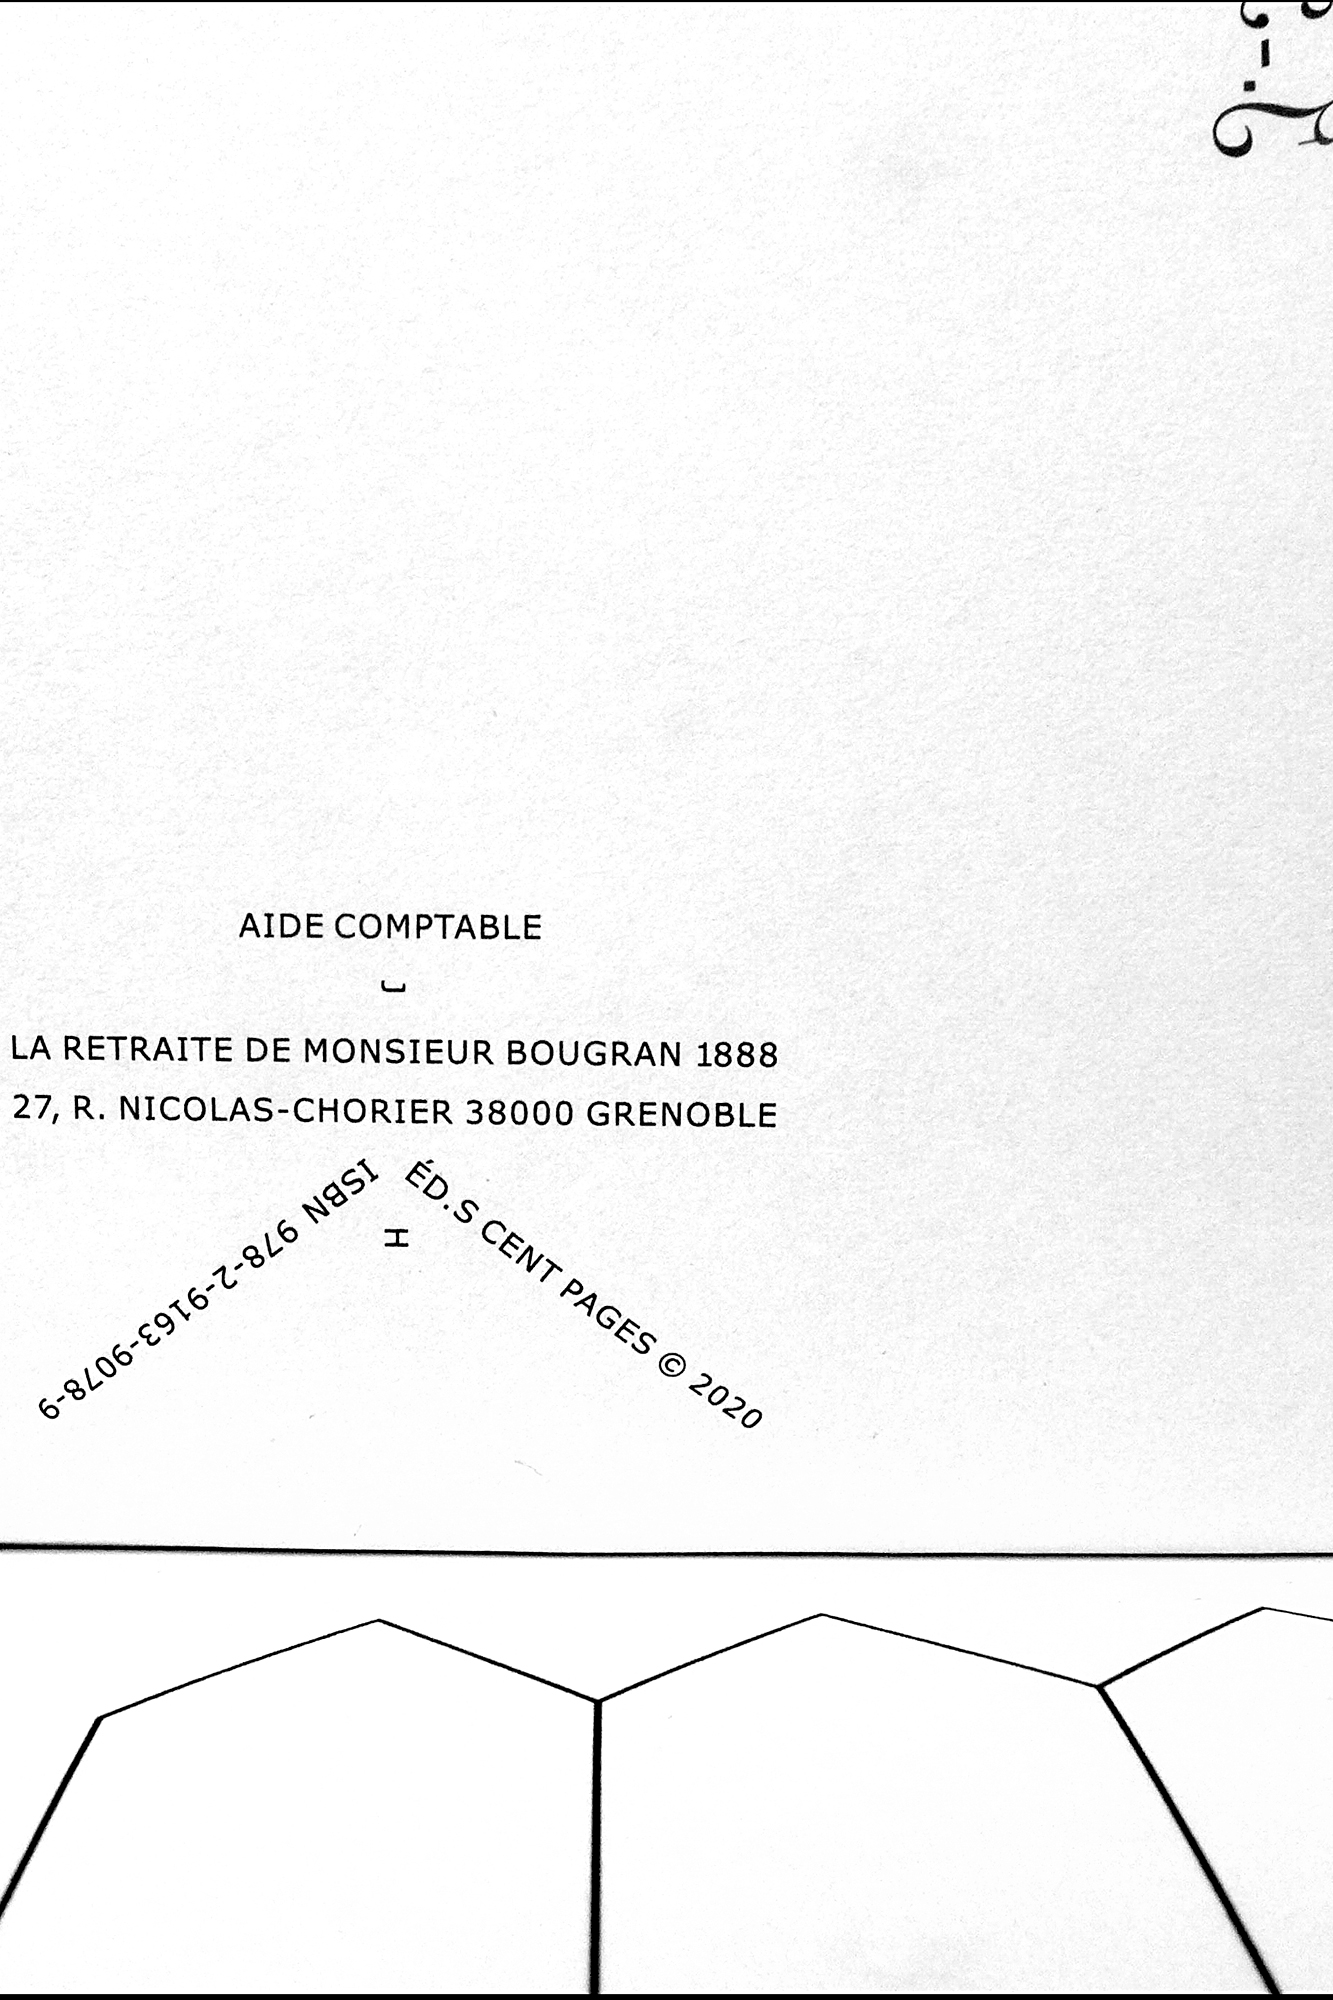 à l'aide, calligrammatiquement K, p. 2, de l'exemplaire N°1, «La Retraite de Monsieur Bougran», éditions CENT PAGES, 2020 